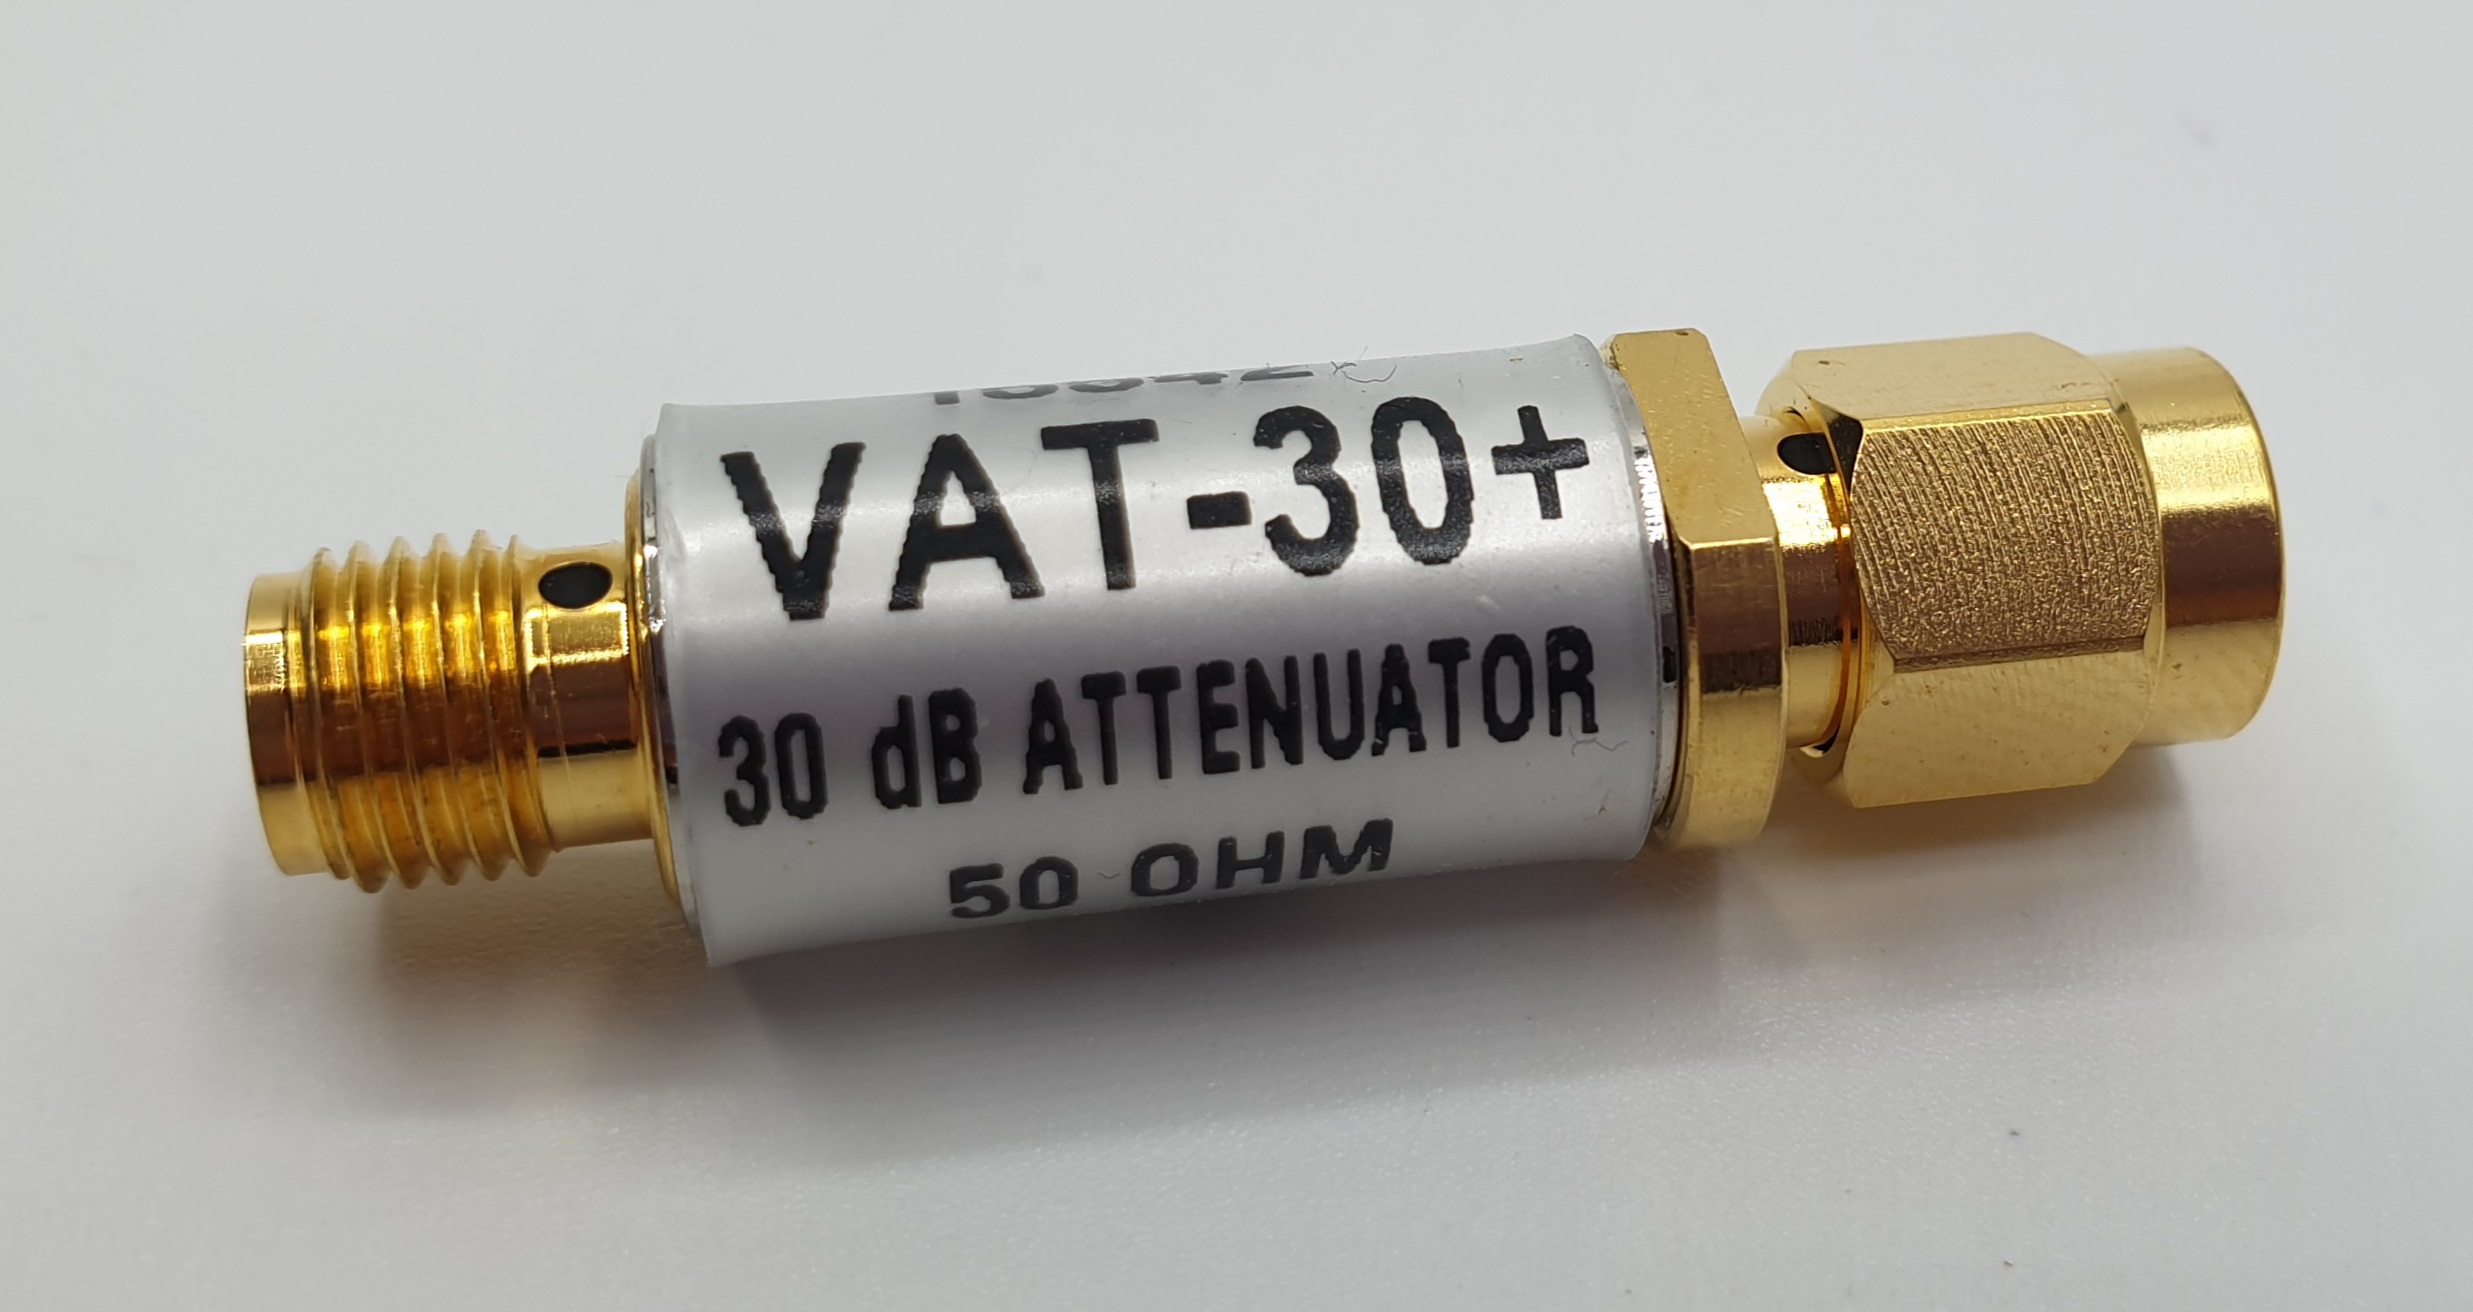 SMA Attenuator, DC to 6 GHz, 500mW, 30dB